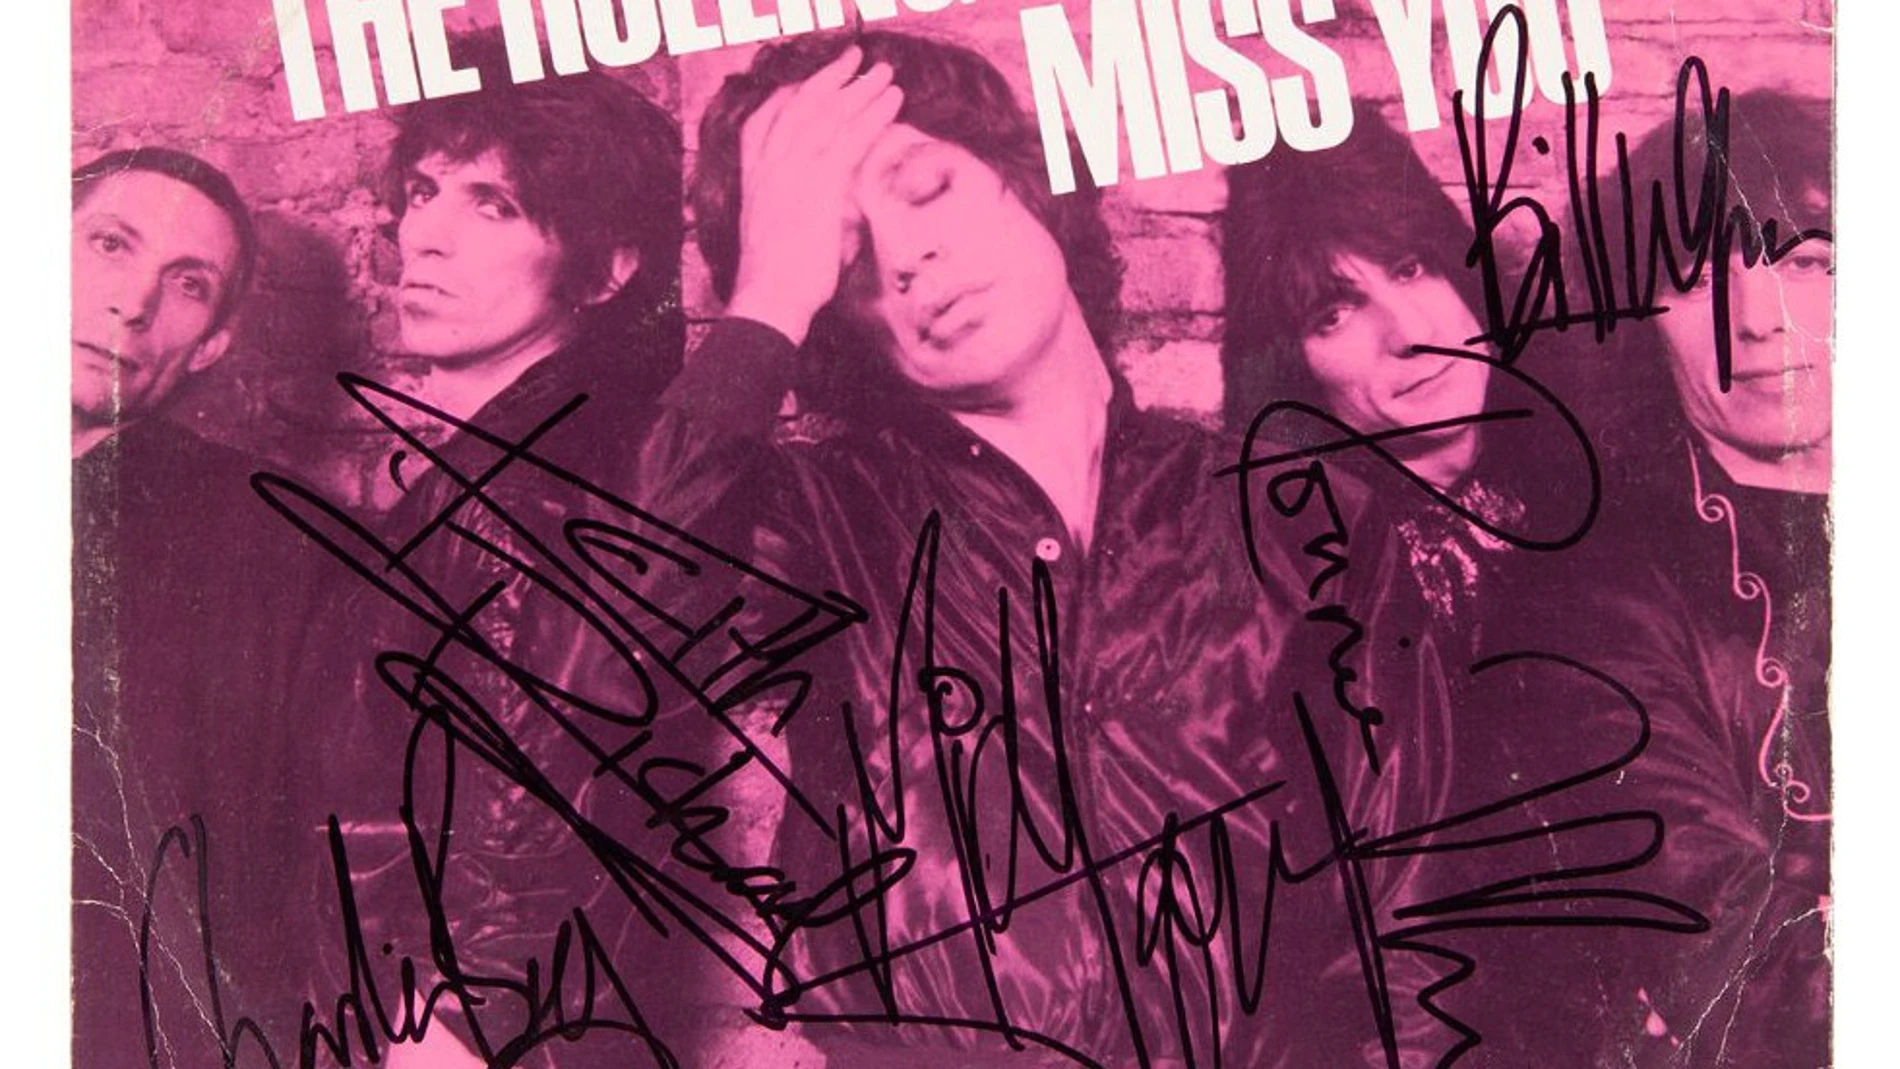 Maxi single de The Rolling Stones “Miss You” con vinilo de color rosa y carátula firmada por todos los componentes de la banda; (de izquierda a derecha) Charlie Watts, Keith Richards, Mick Jagger, Ronnie Wood, y Bill Wyman.